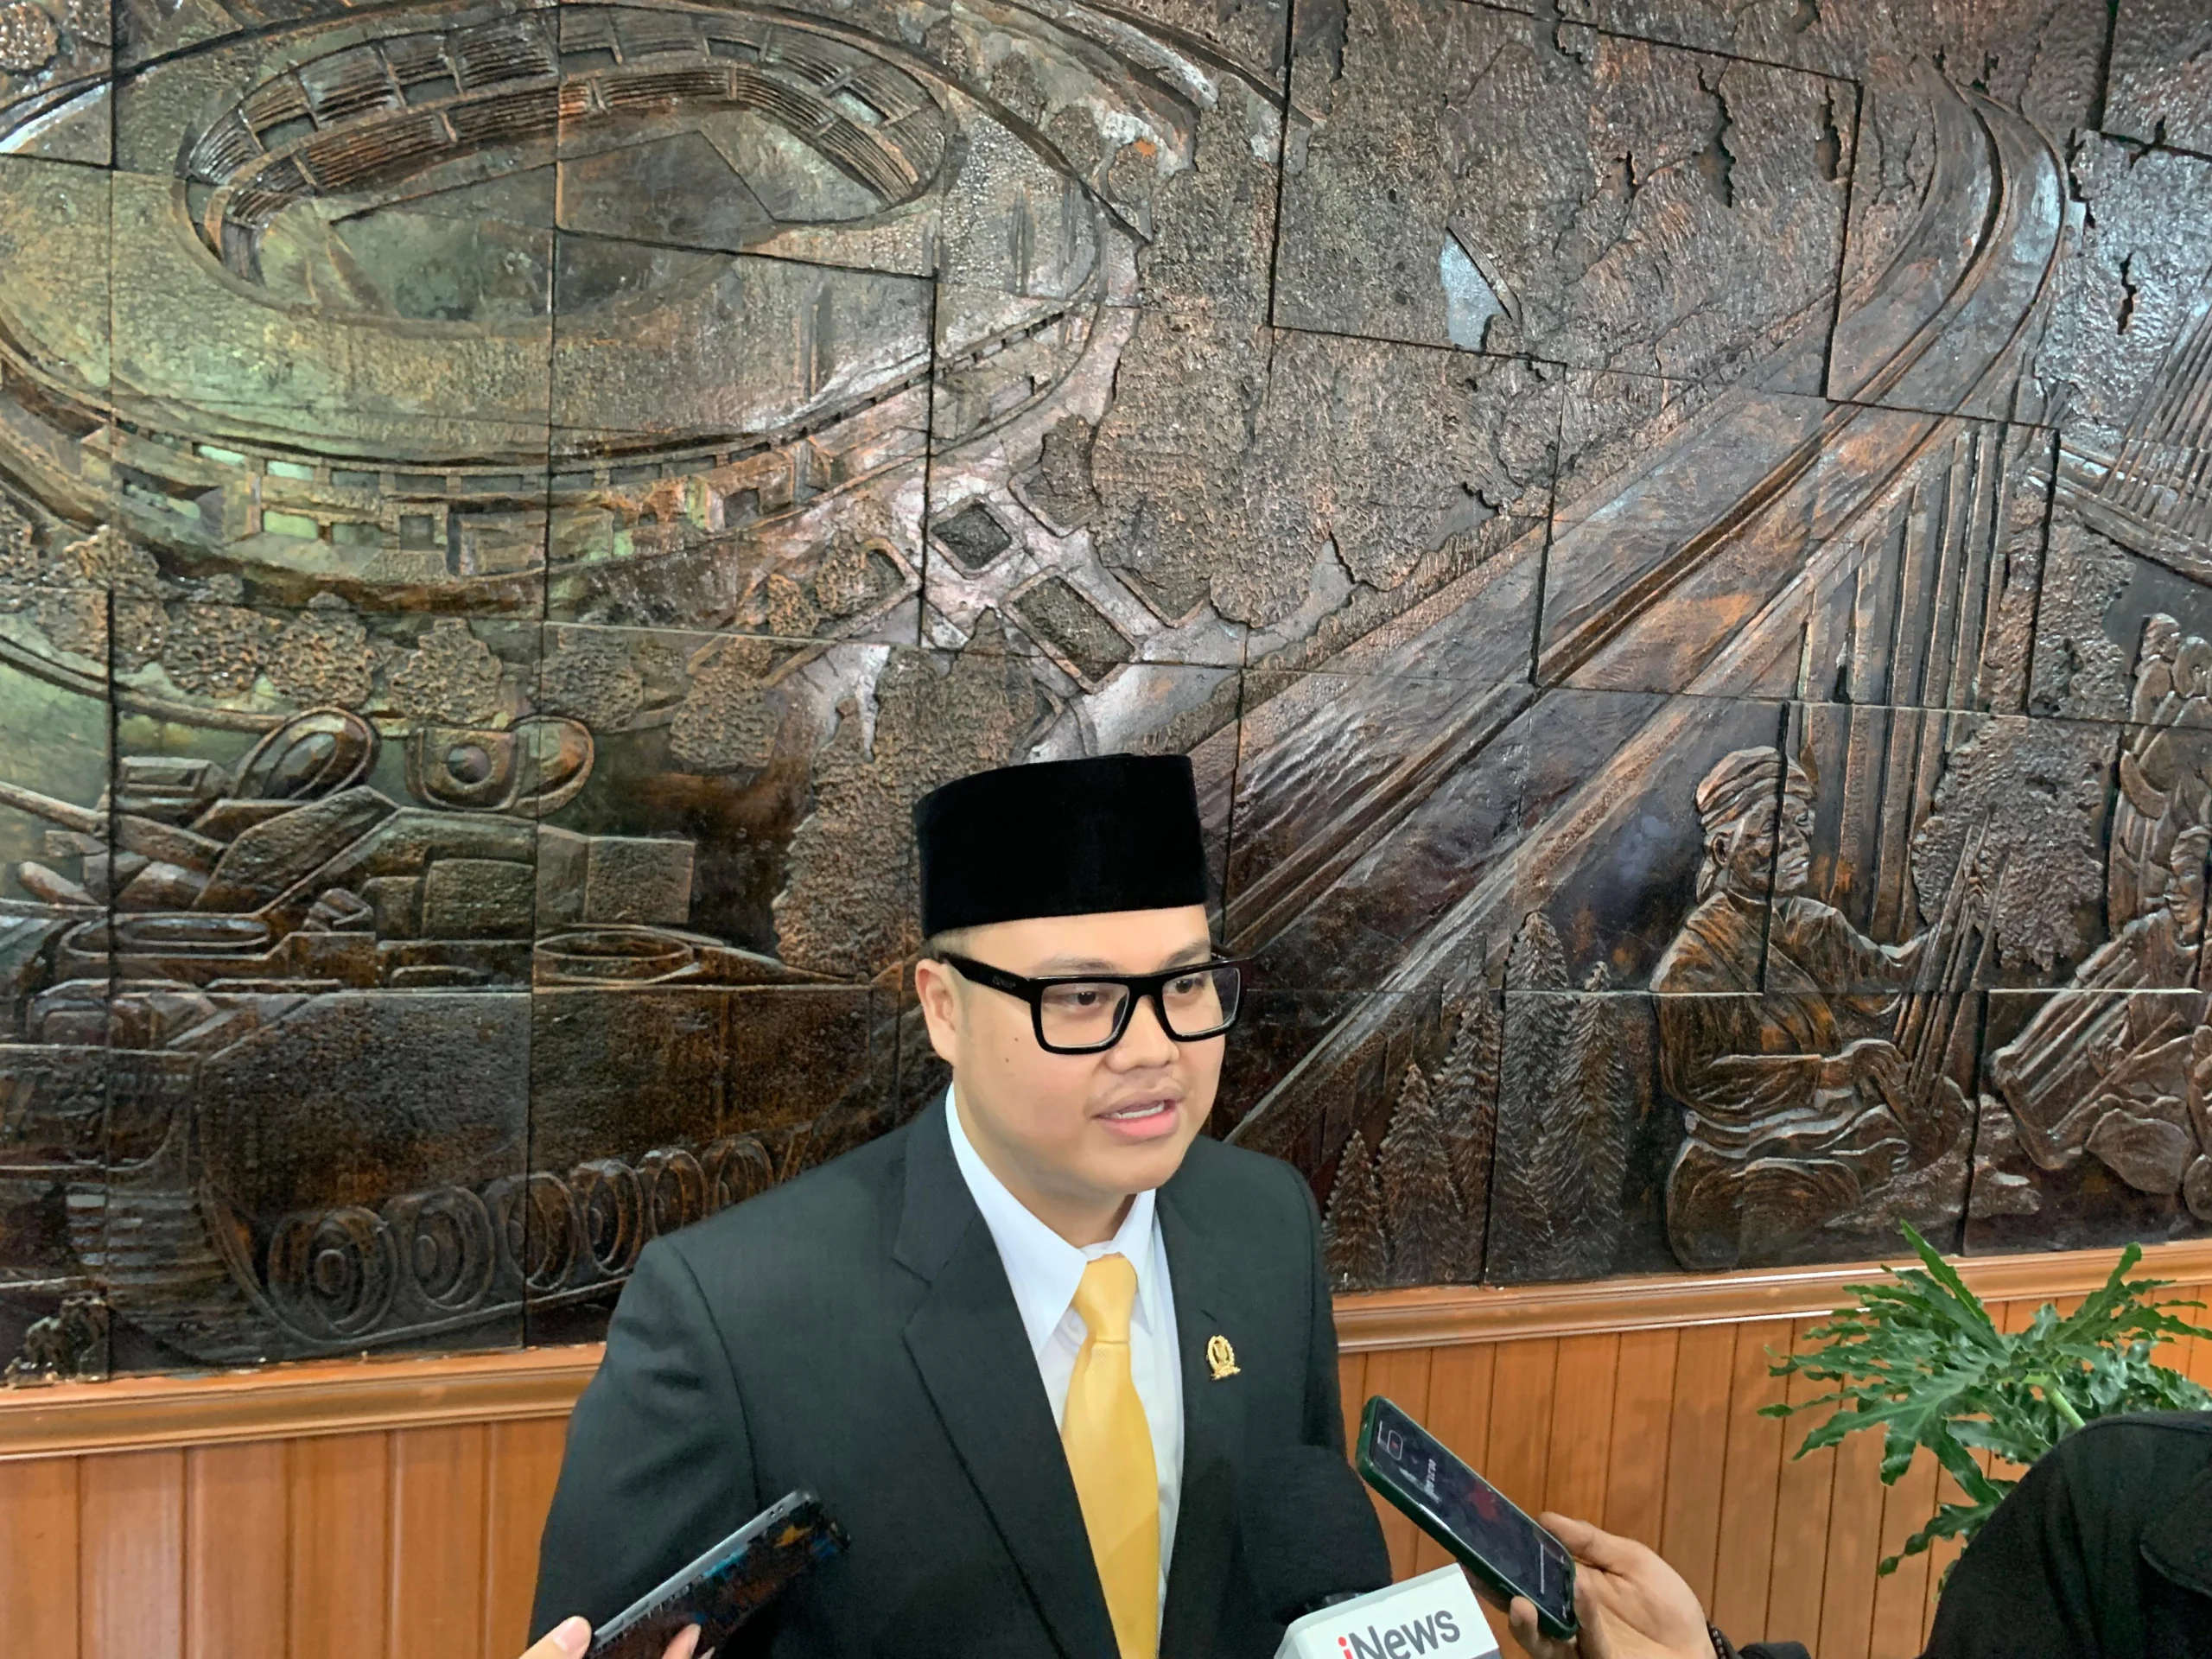 Bagja Jaya Wibawa, anggota paling muda terpilih DPRD Kota Bandung (Sadam Husen / JE)